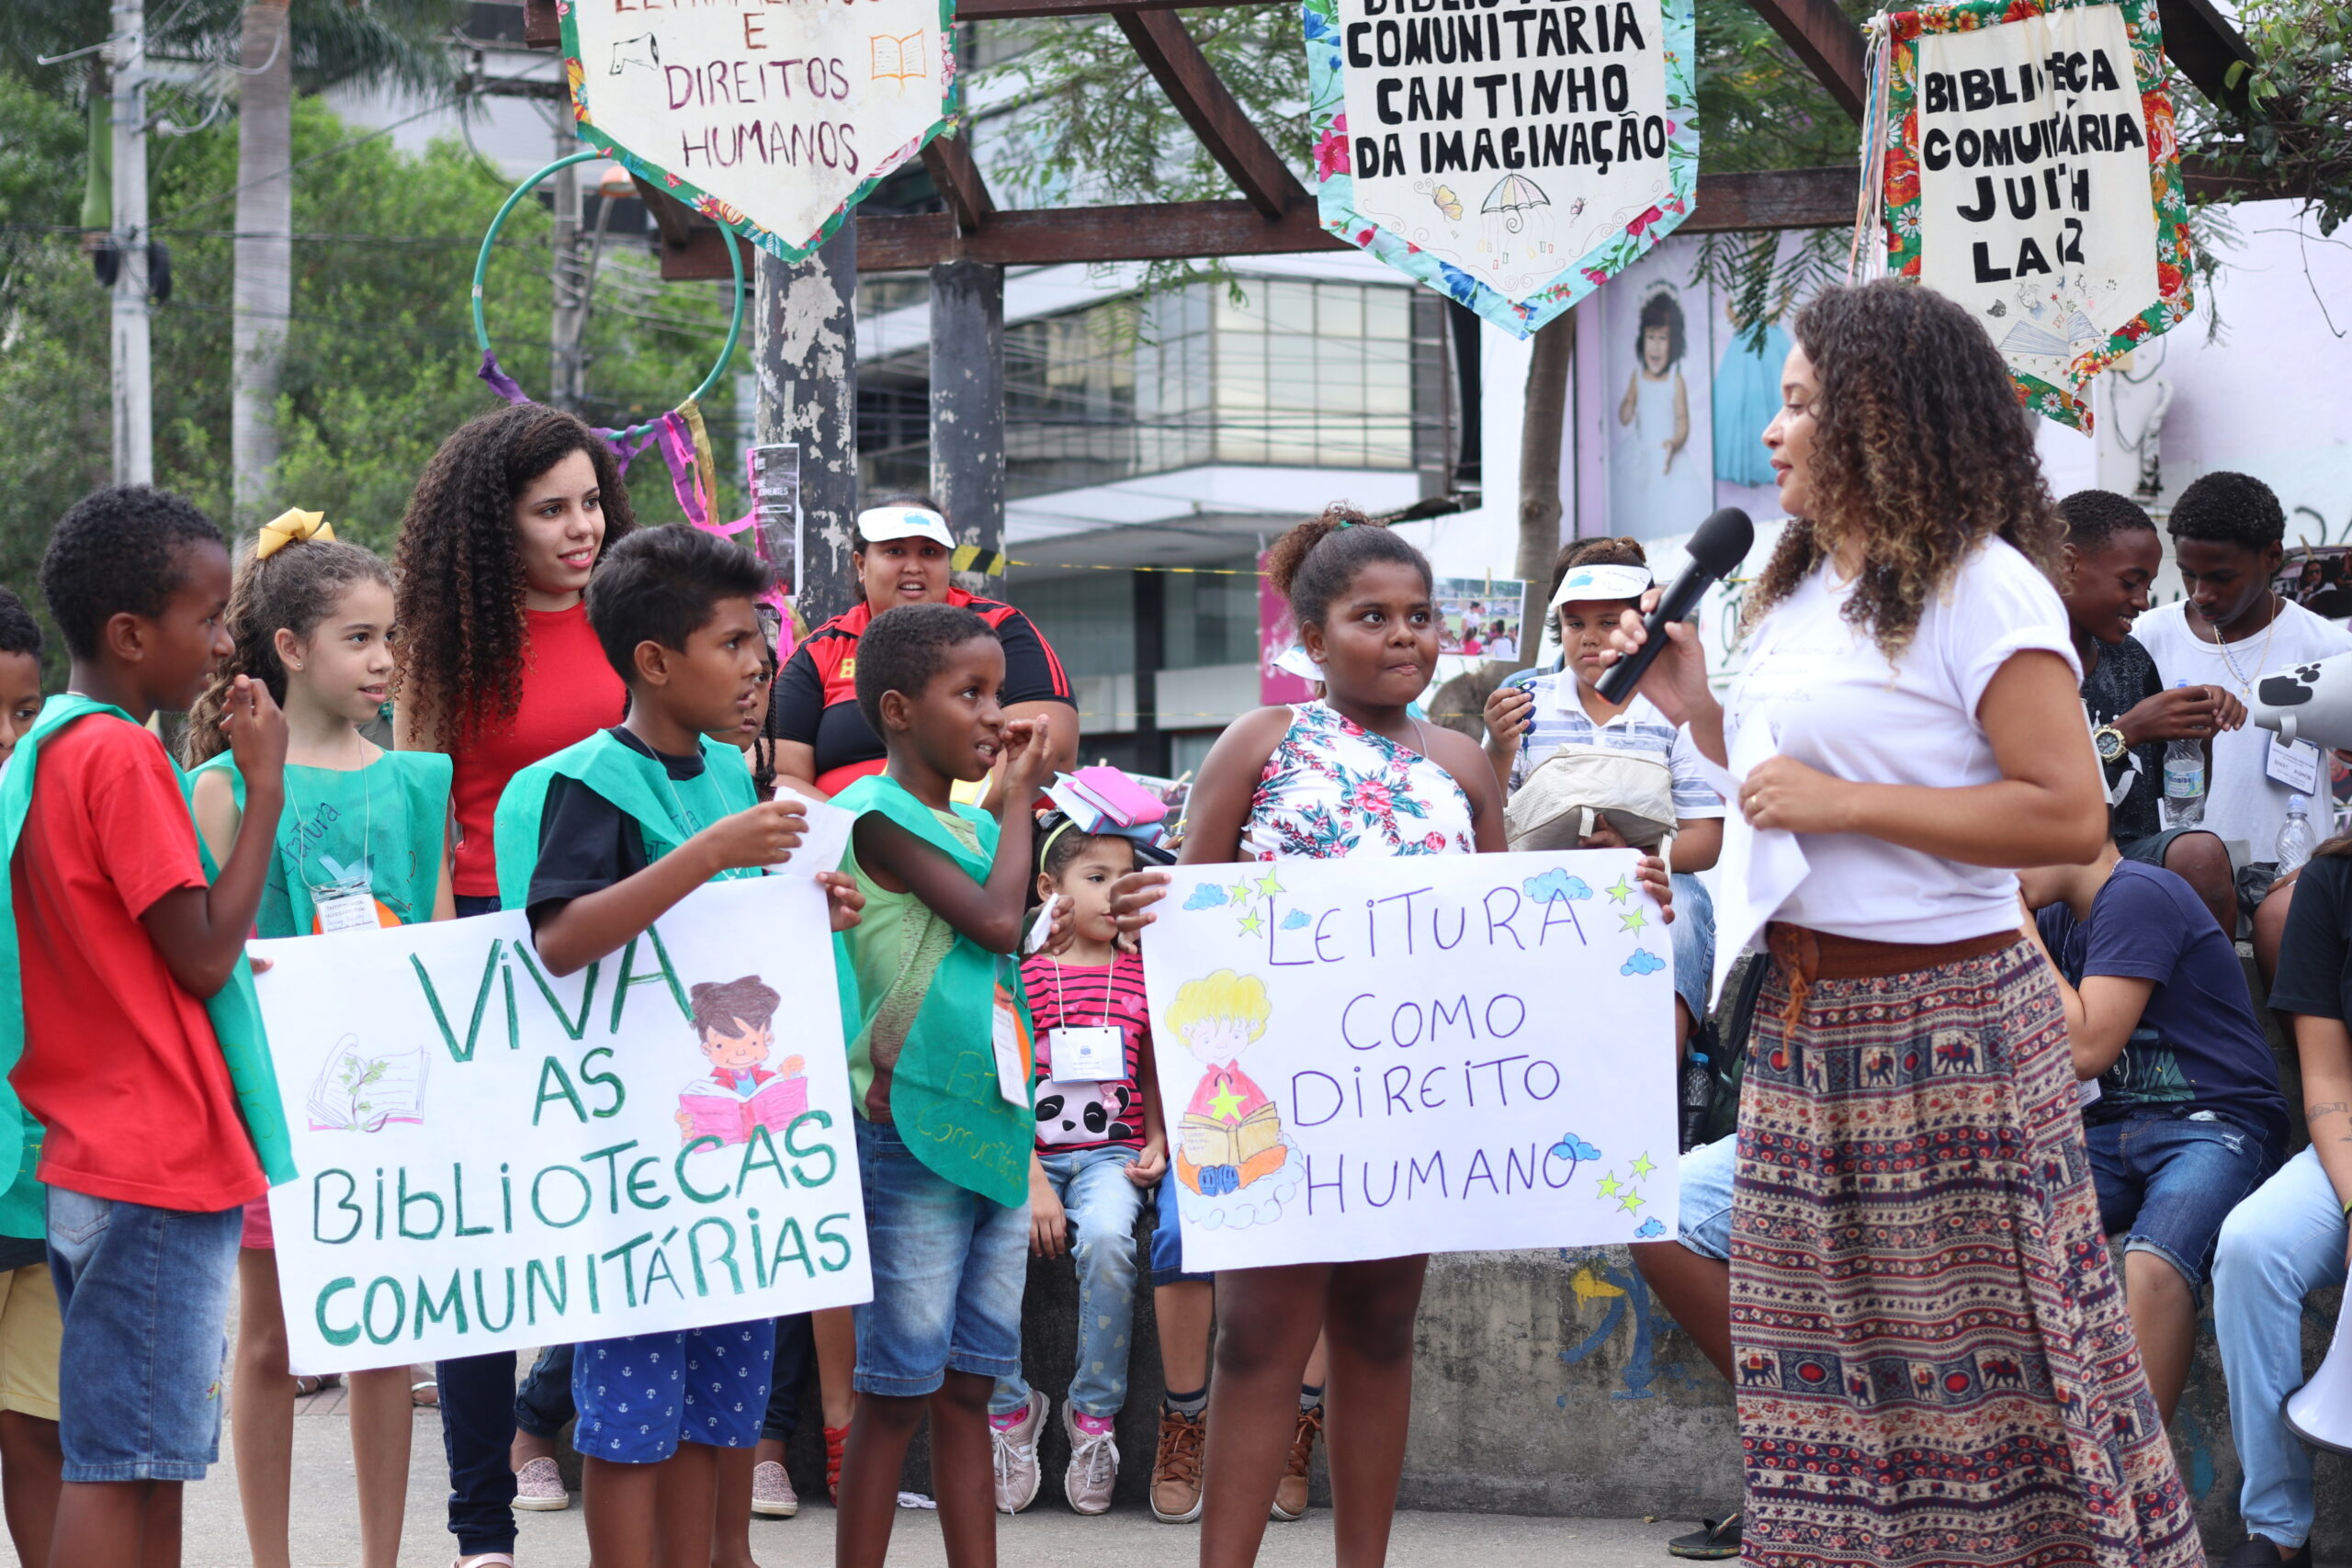 Parada do Livro na Praça dos Direitos Humanos. Foto: Nathália Cabral